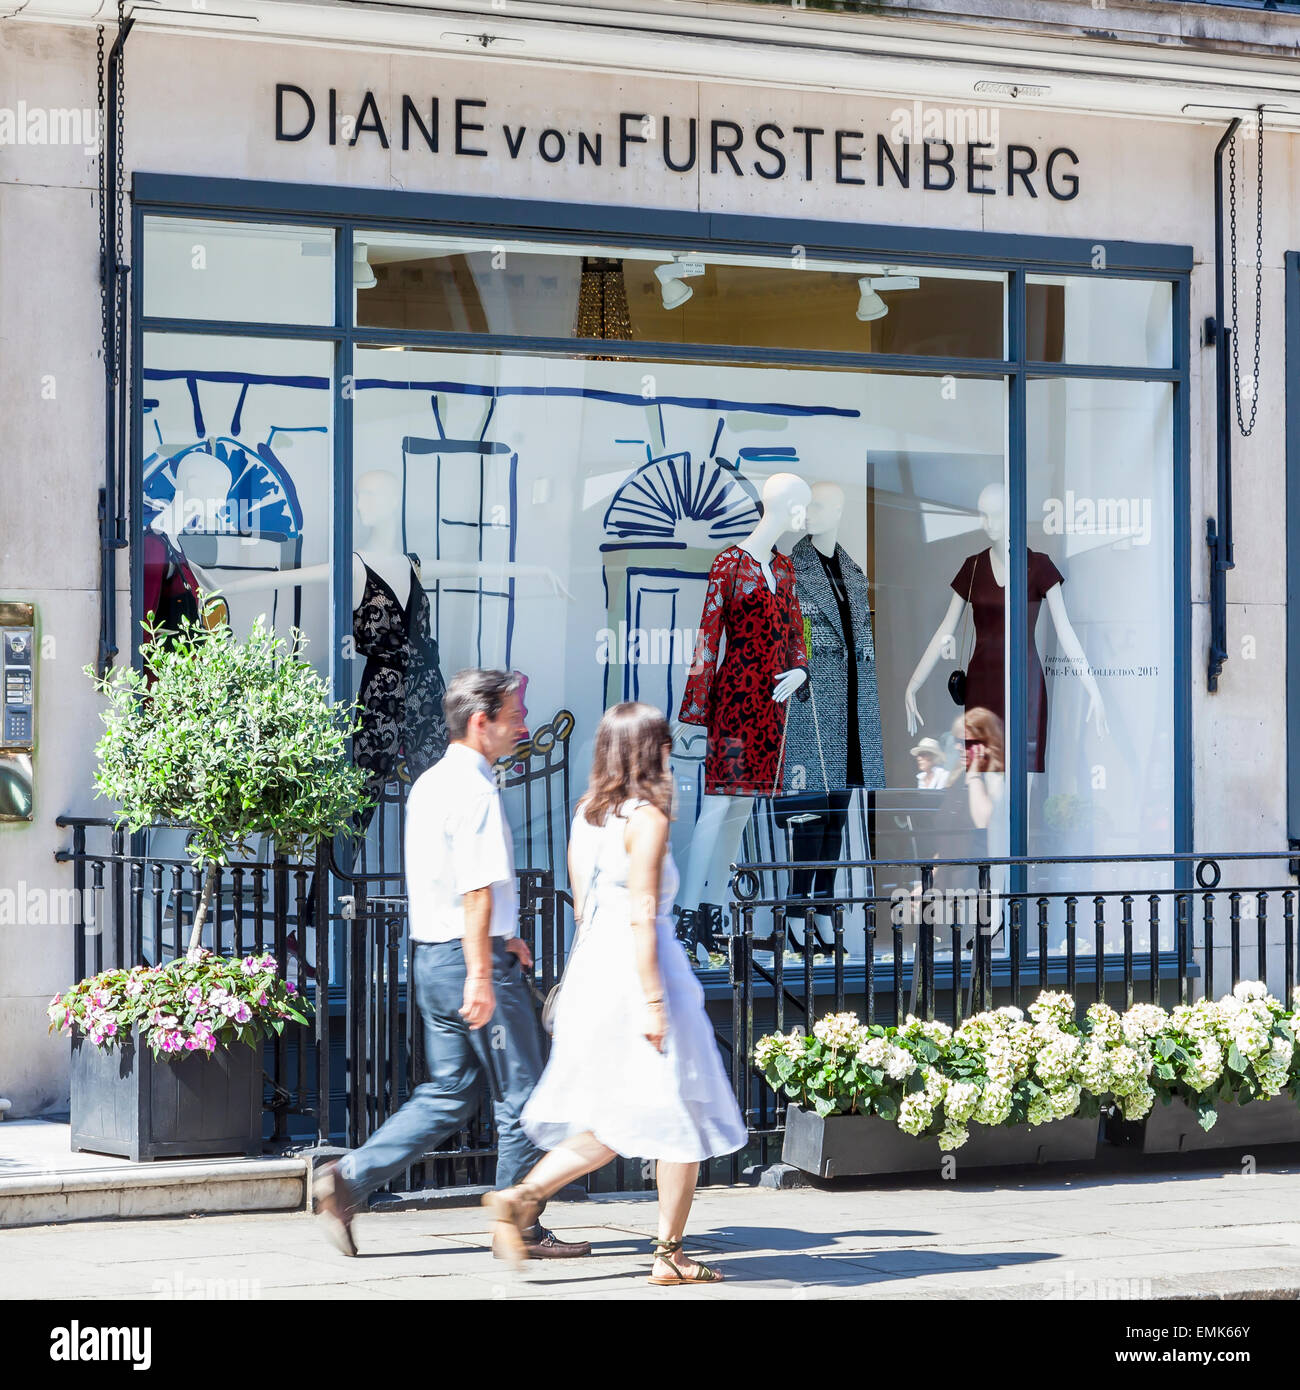 Store of fashion designer Diane von Fürstenberg, or Diane von Furstenberg, London, England, United Kingdom Stock Photo